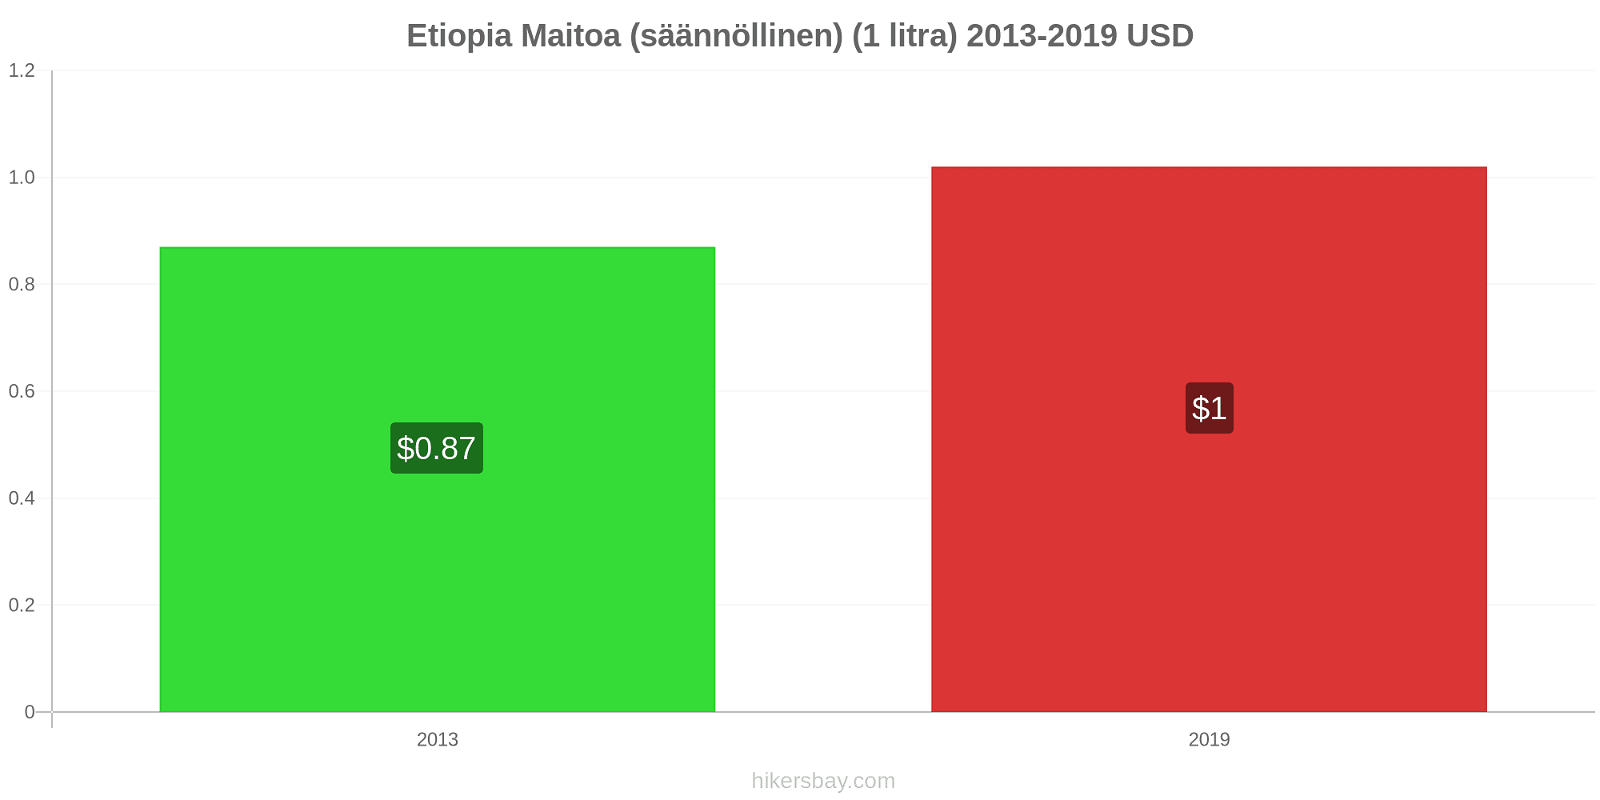 Etiopia hintojen muutokset Maitoa (säännöllinen) (1 litra) hikersbay.com